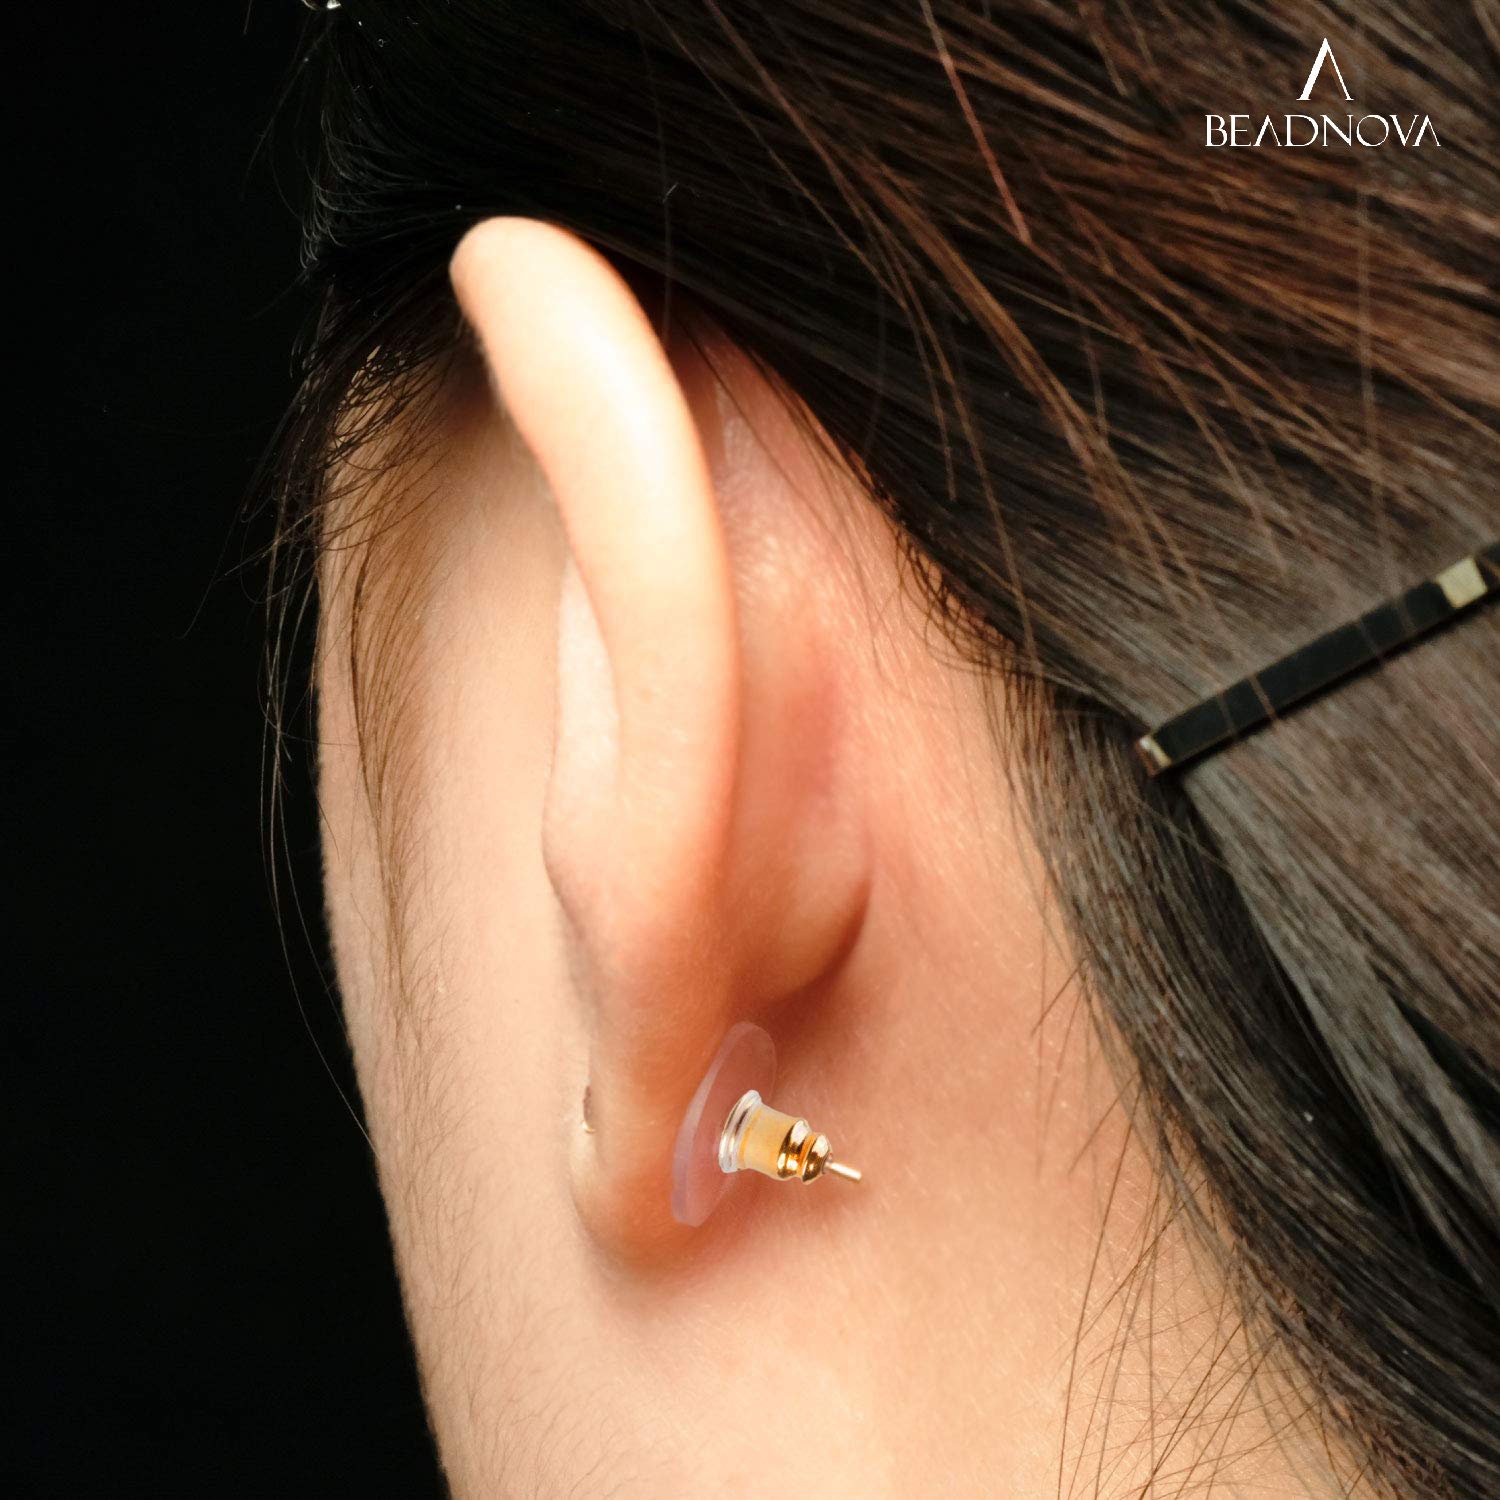 Earring Backs,4PCS Dics Earring Backs for Studs, Droopy Ears, Heavy  Earrings, Secure Pierced Earring Backs Replacements in White Gold, Large  Heavy